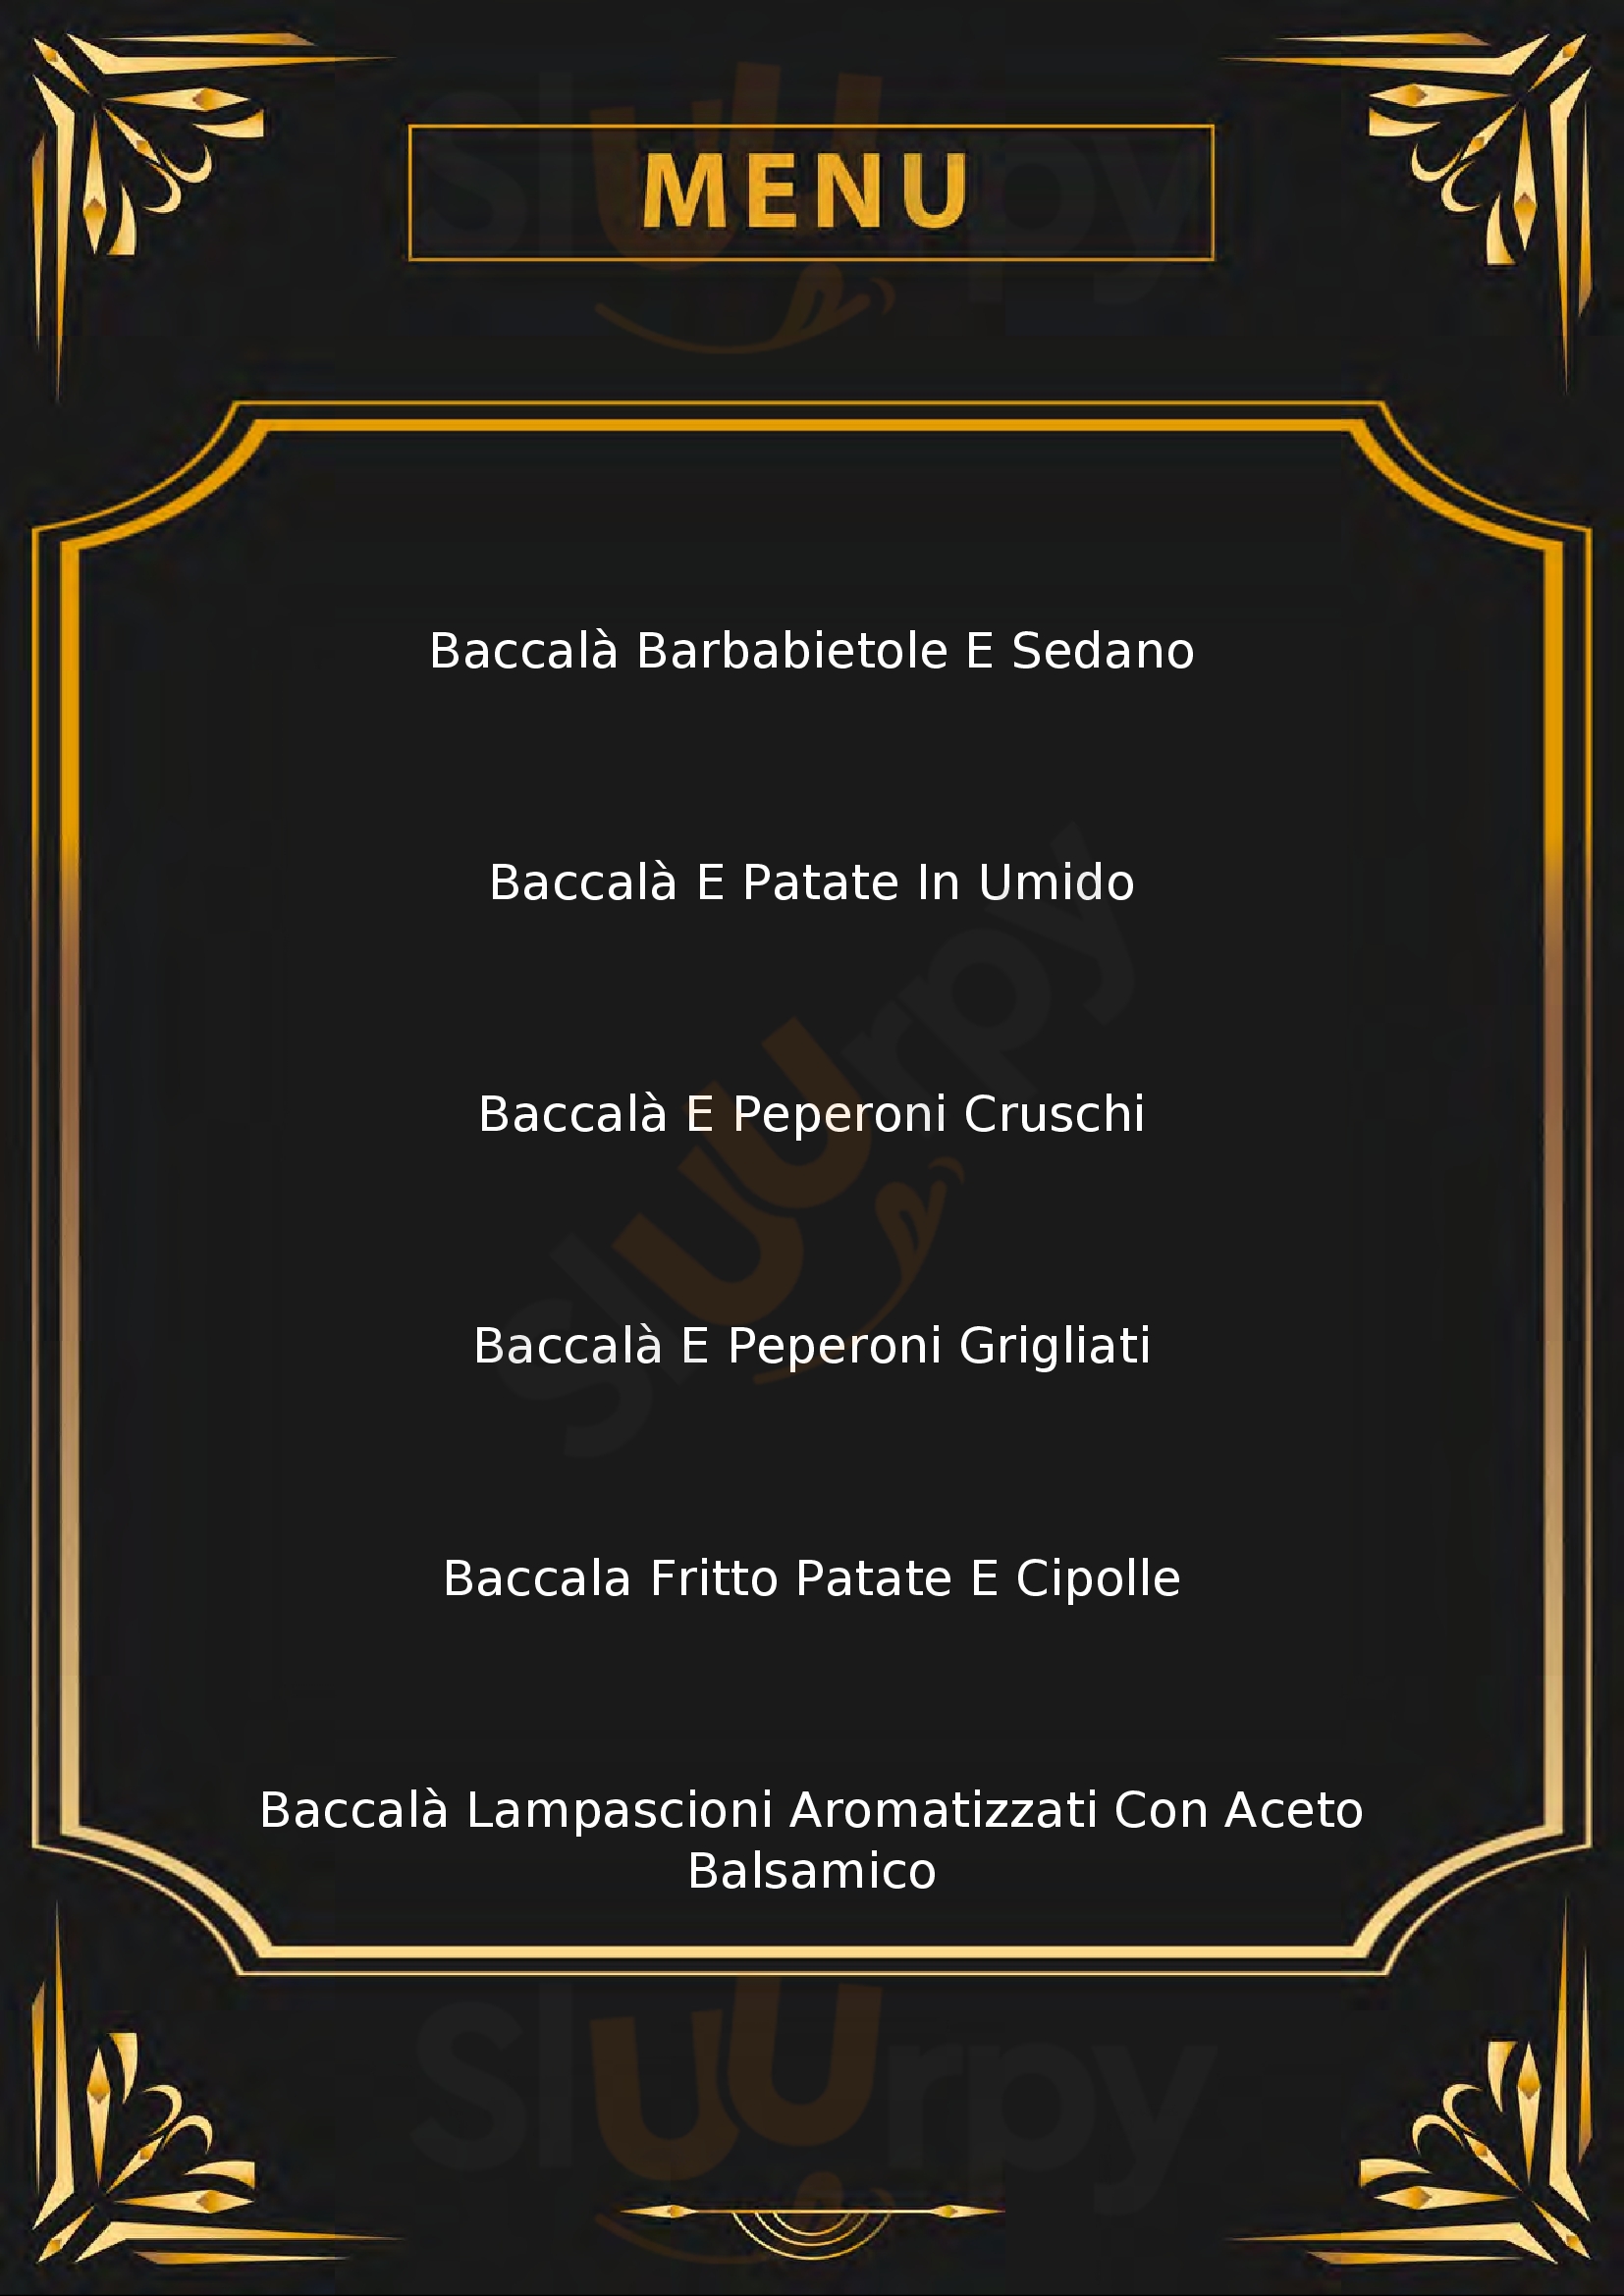 Osteria del Baccalà Terranova di Pollino menù 1 pagina